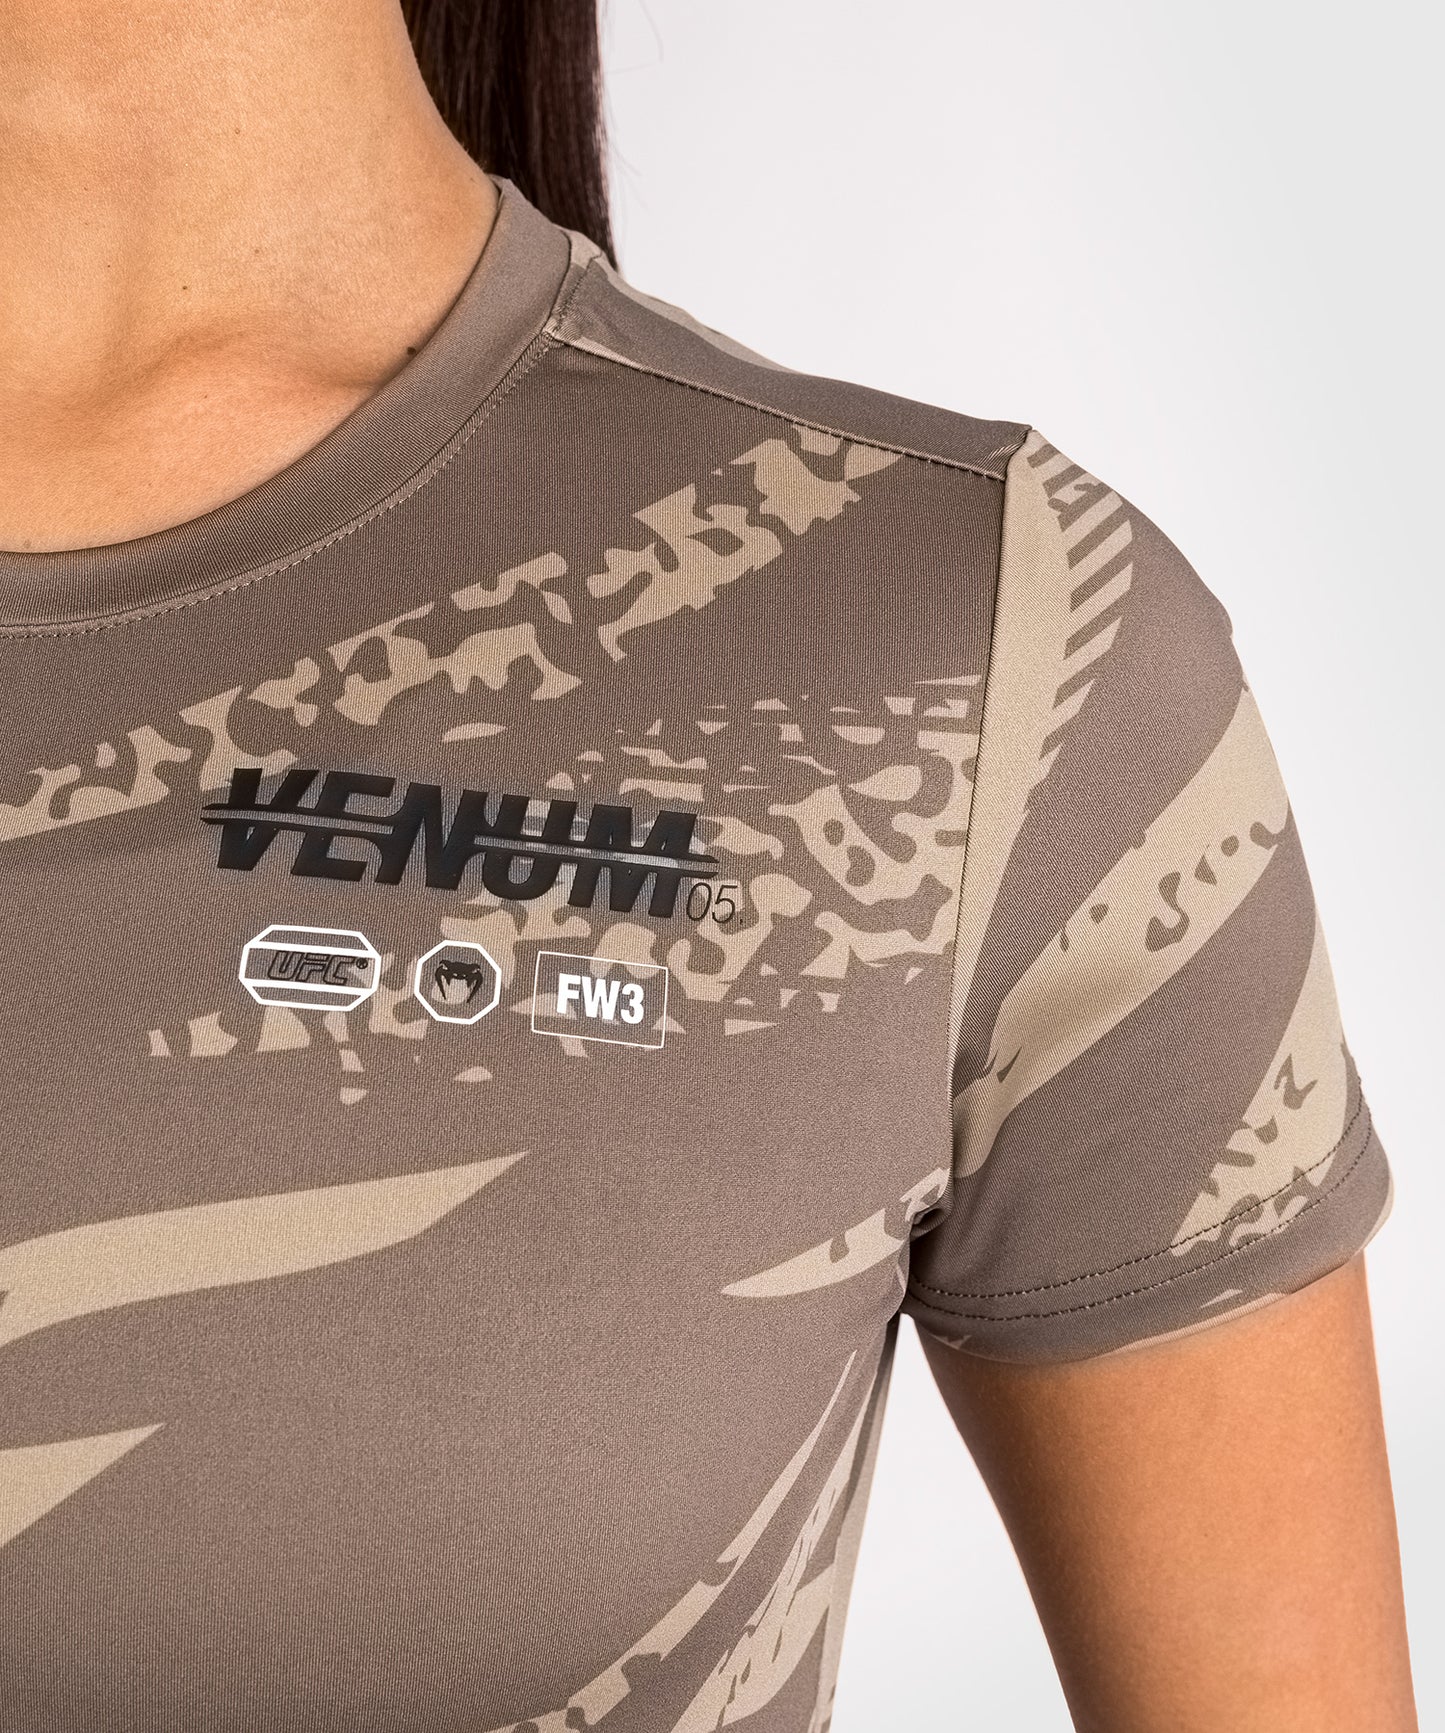 T-Shirt Dry-Tech pour Femmes UFC Adrenaline by Venum Fight Week - Desert Camo